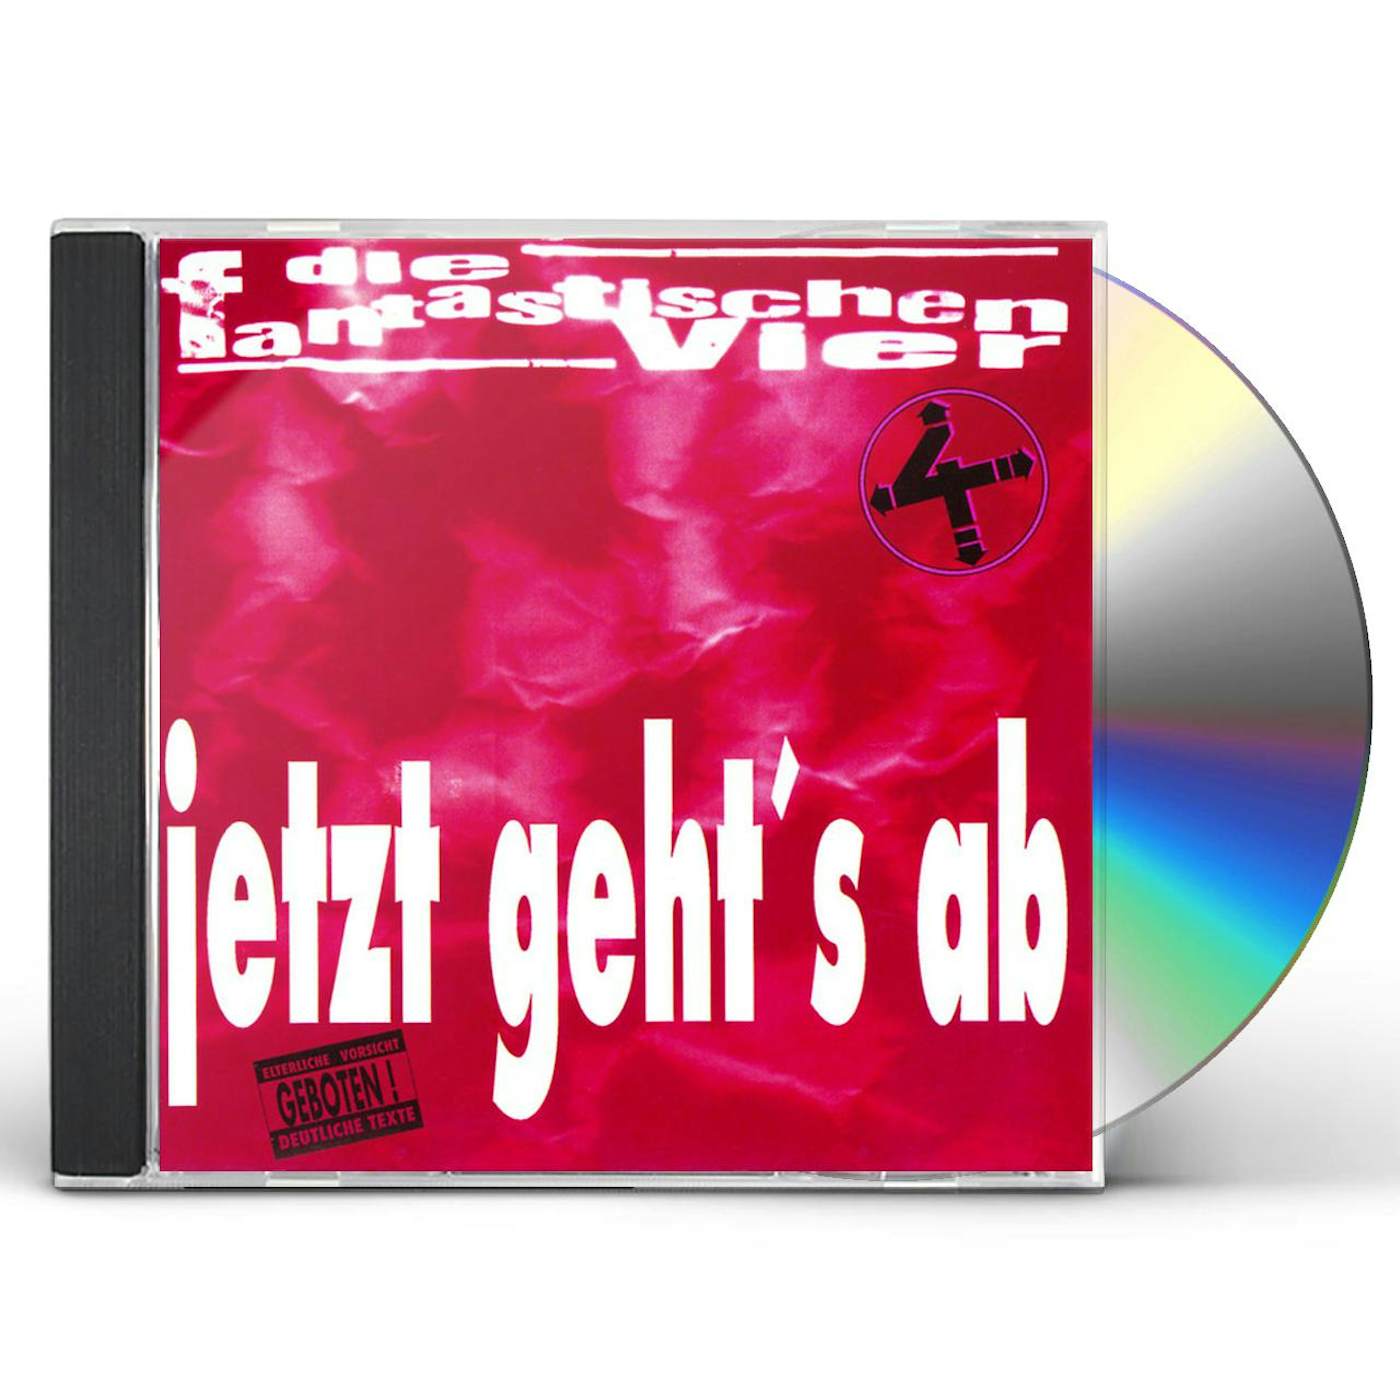 Fantastischen Vier JETZT GEHT'S AB CD